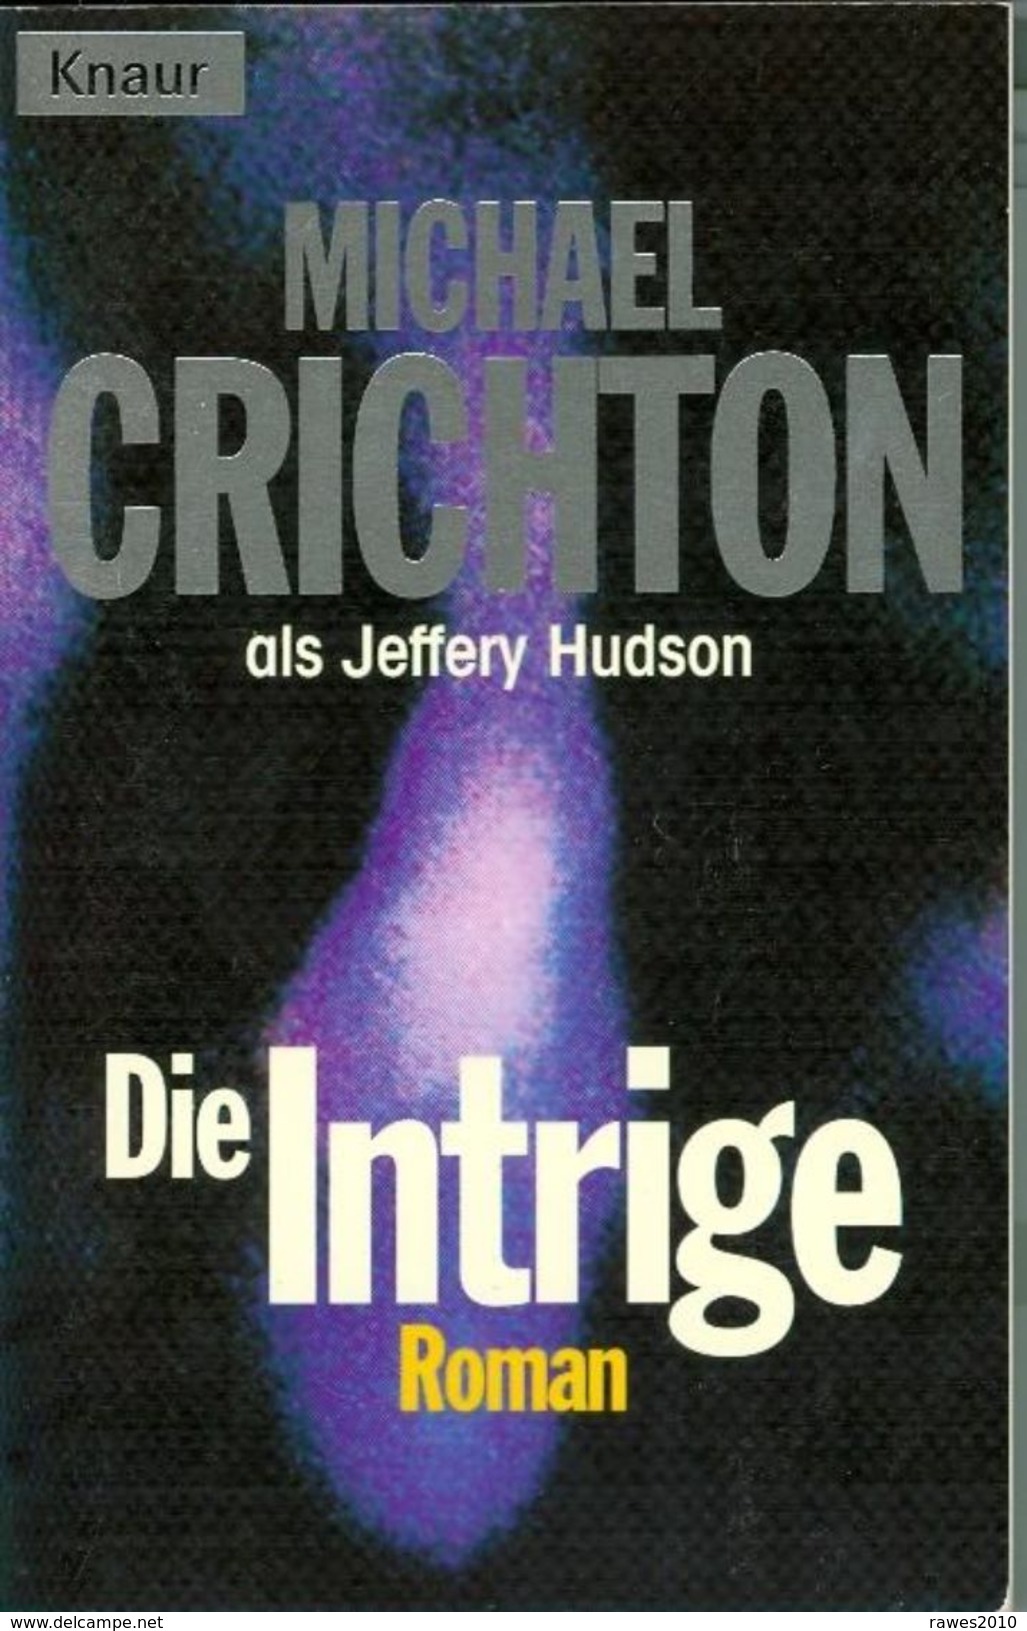 Buch: Michael Crichton: Die Intrige. Roman Knaur Verlag 1998 341 Seiten - Policíacos